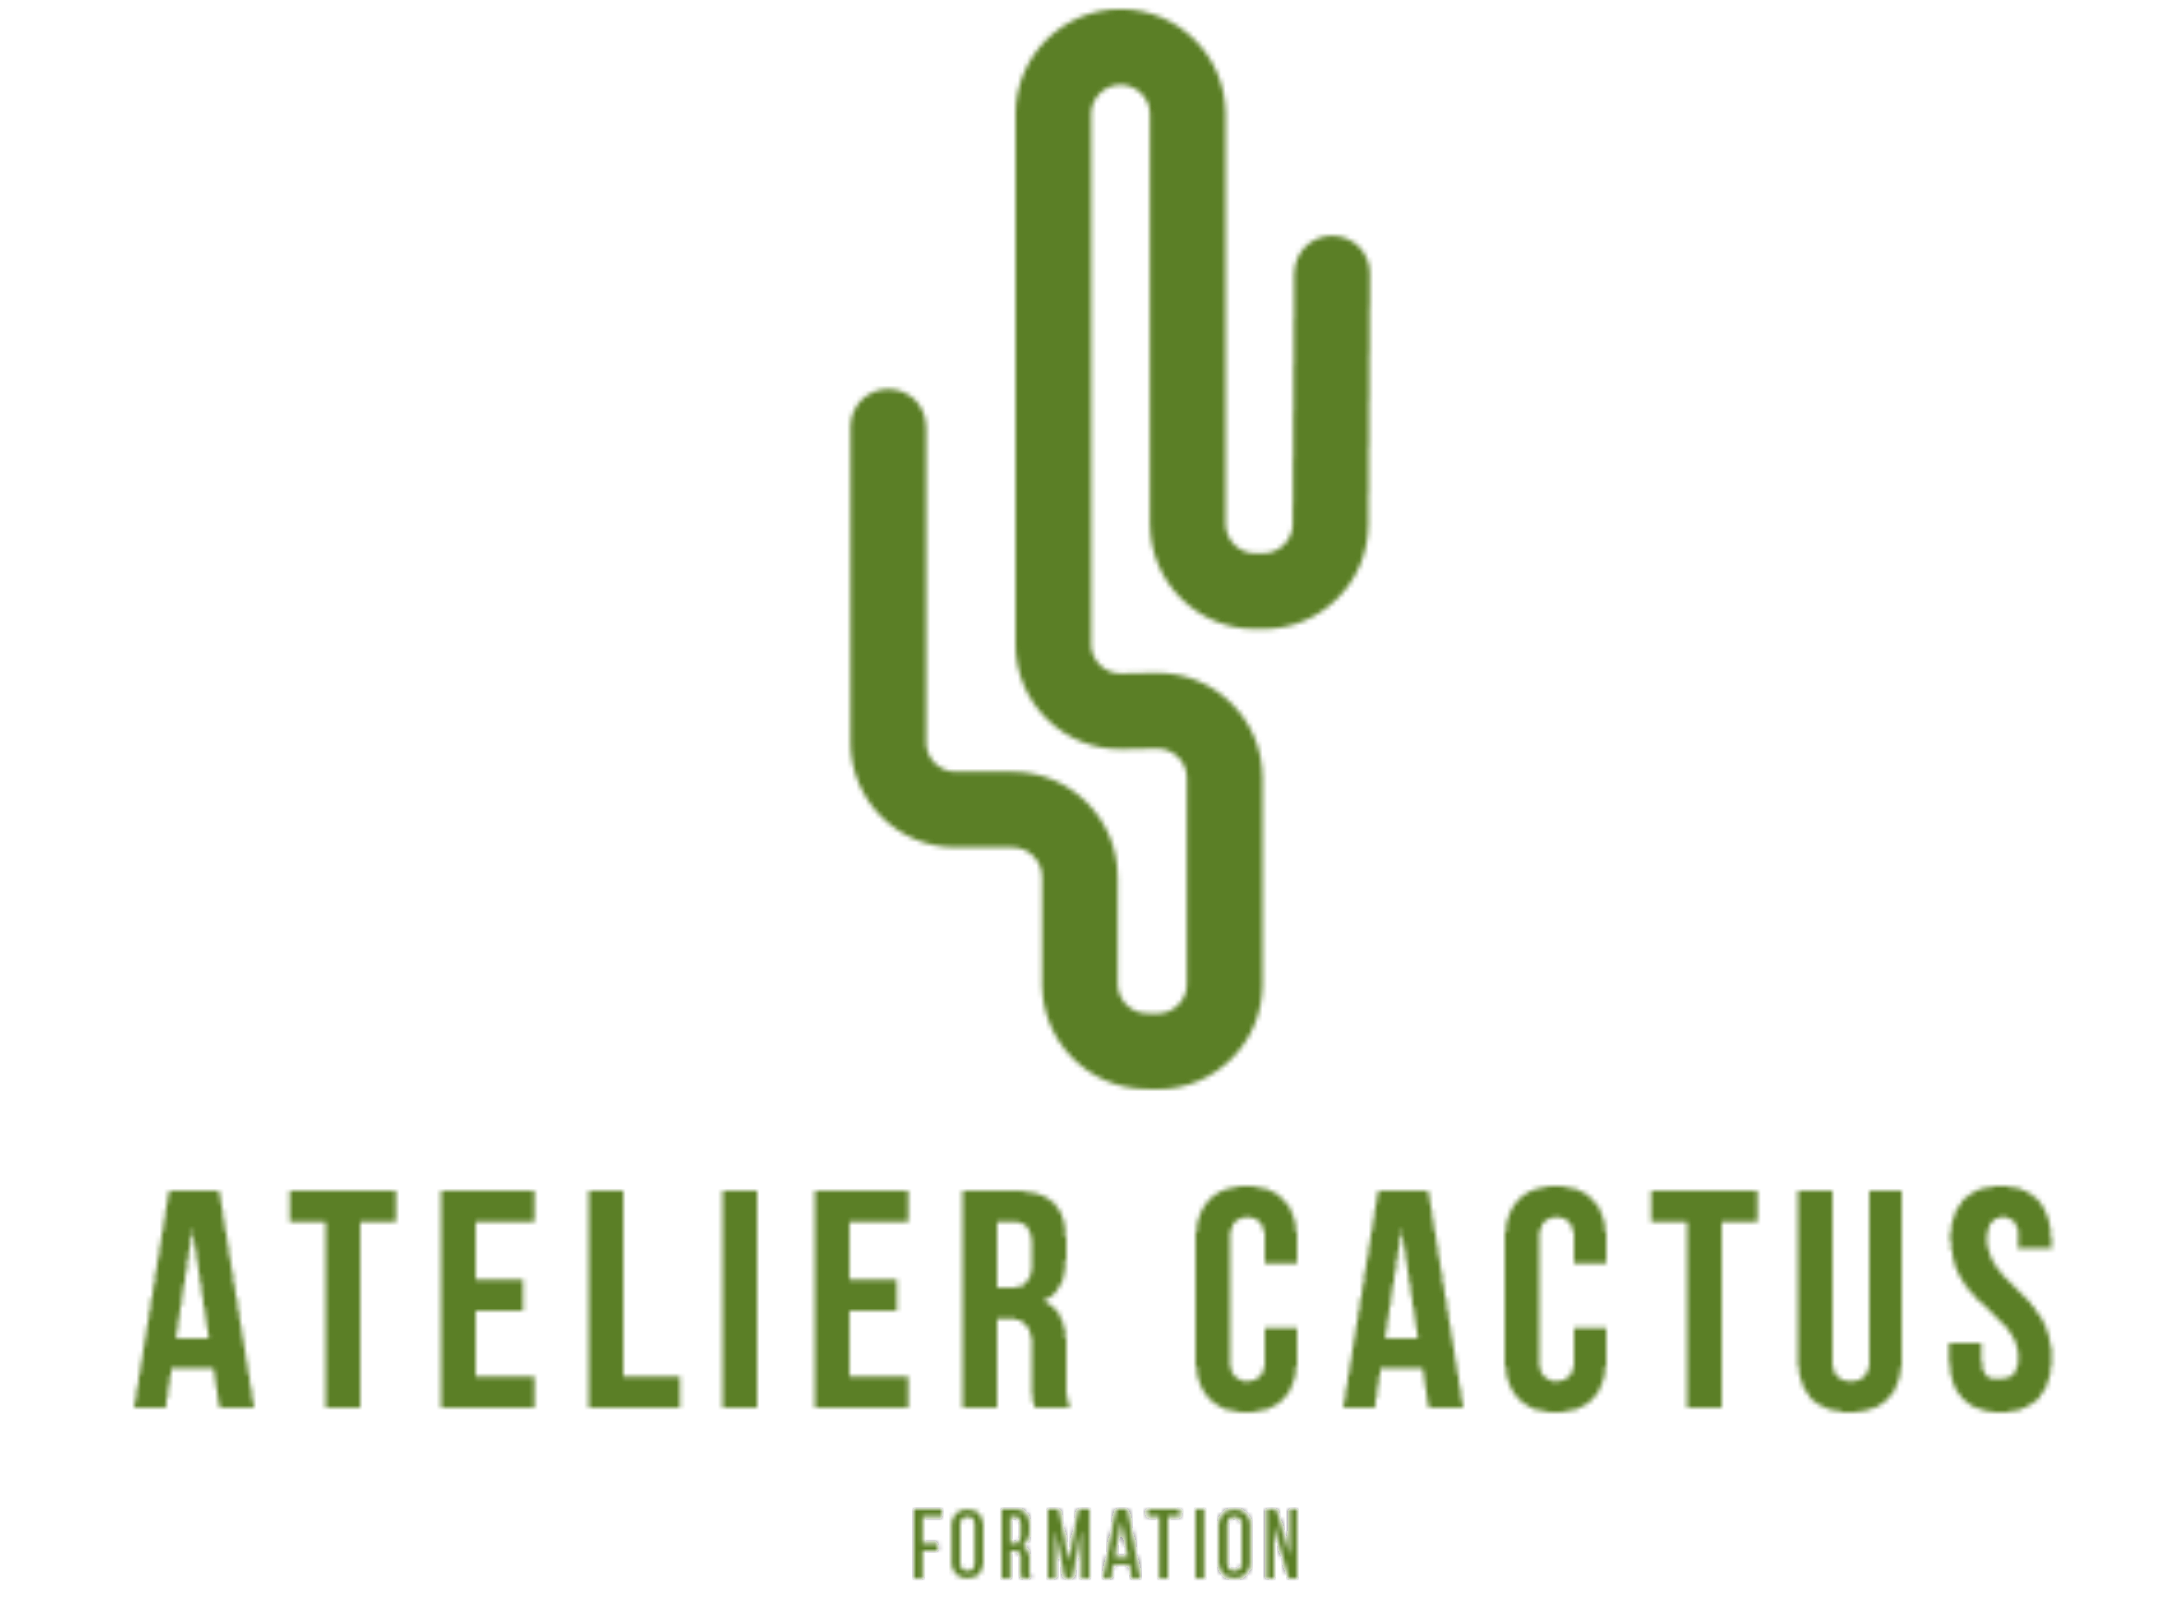 Atelier cactus